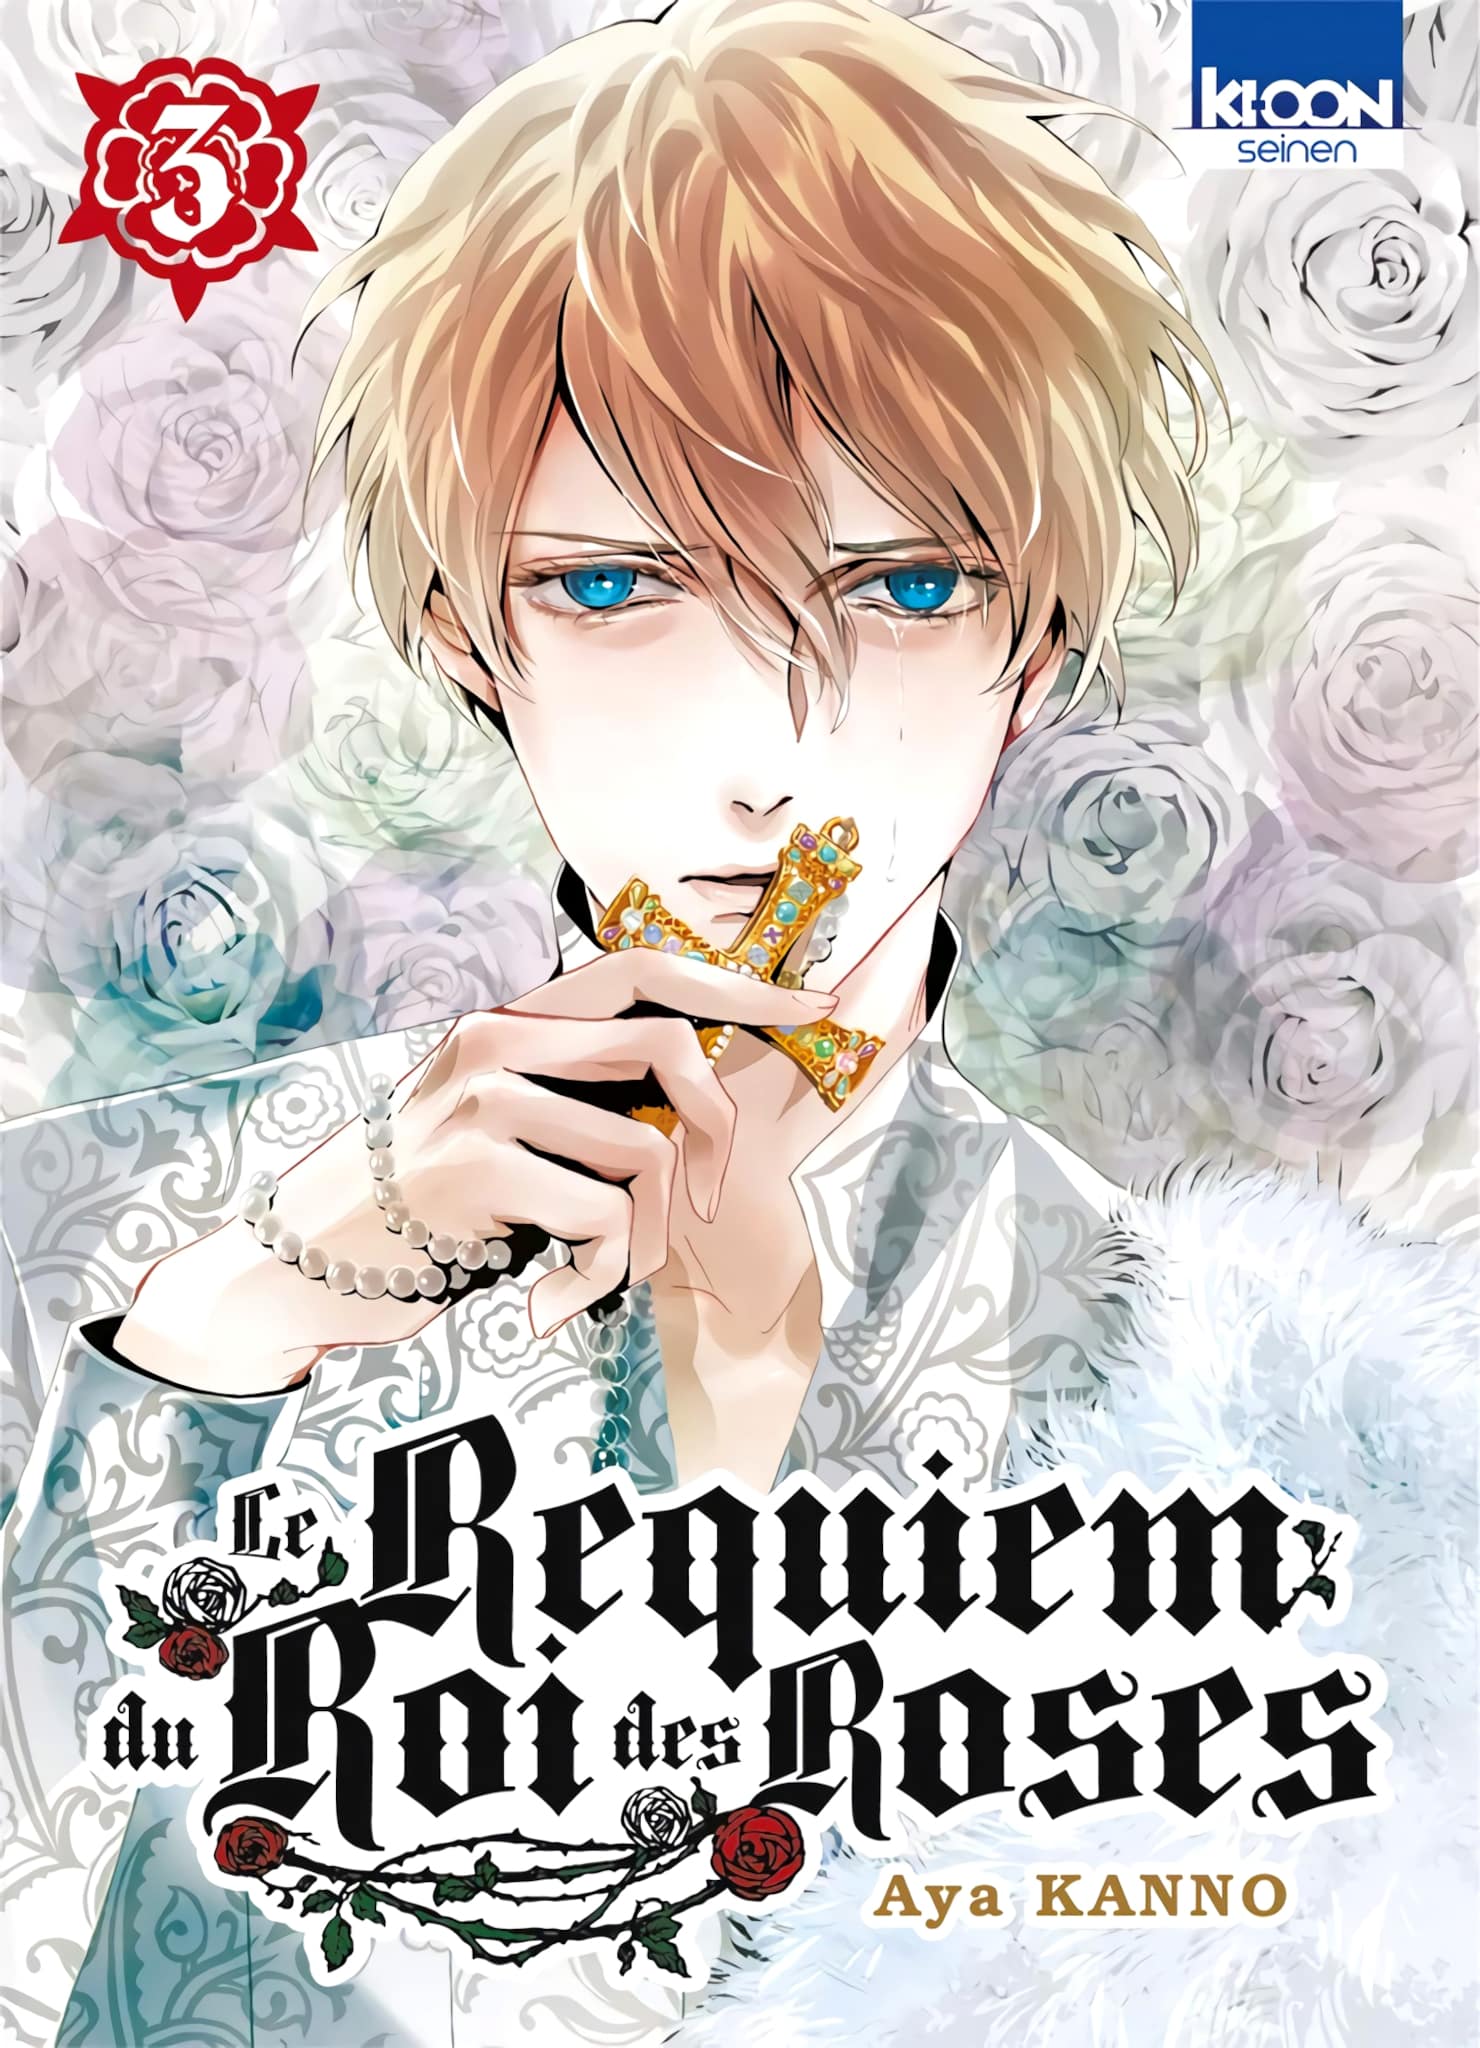 Tome 3 du manga Le Requiem du Roi des Roses